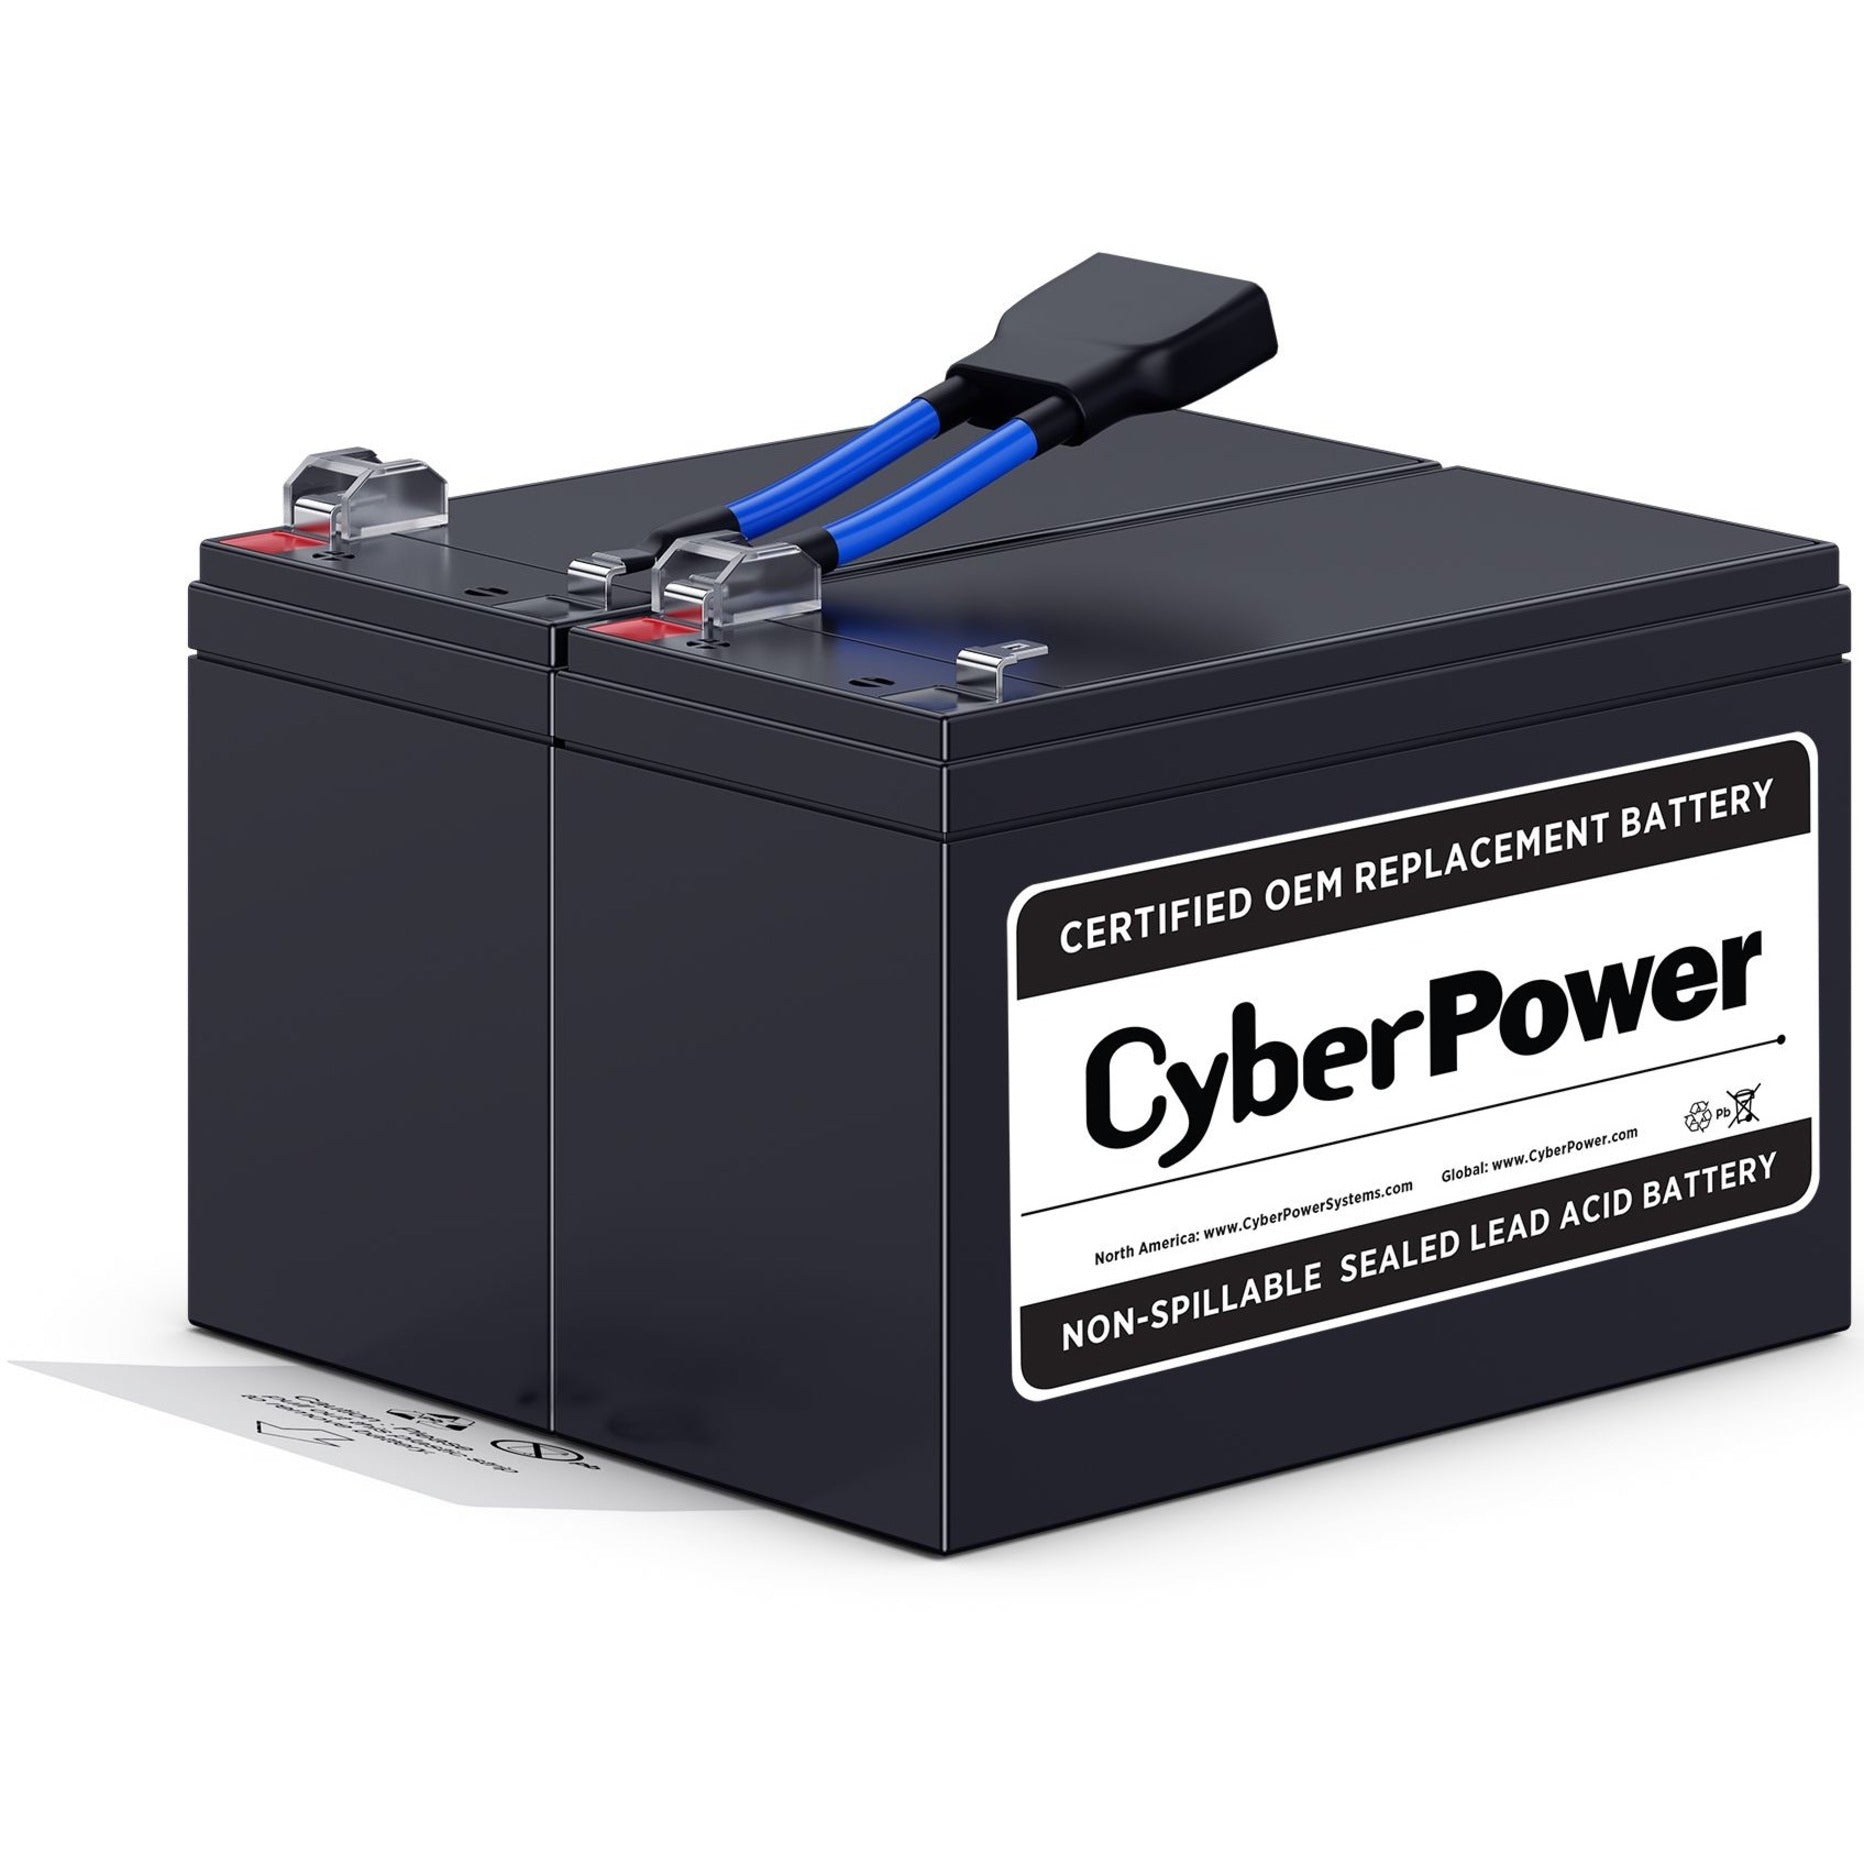 CyberPower Kit de Batería de Repuesto RB1290X2B 12V CC 9000mAh Ácido de Plomo a Prueba de Fugas. Marca: CyberPower.